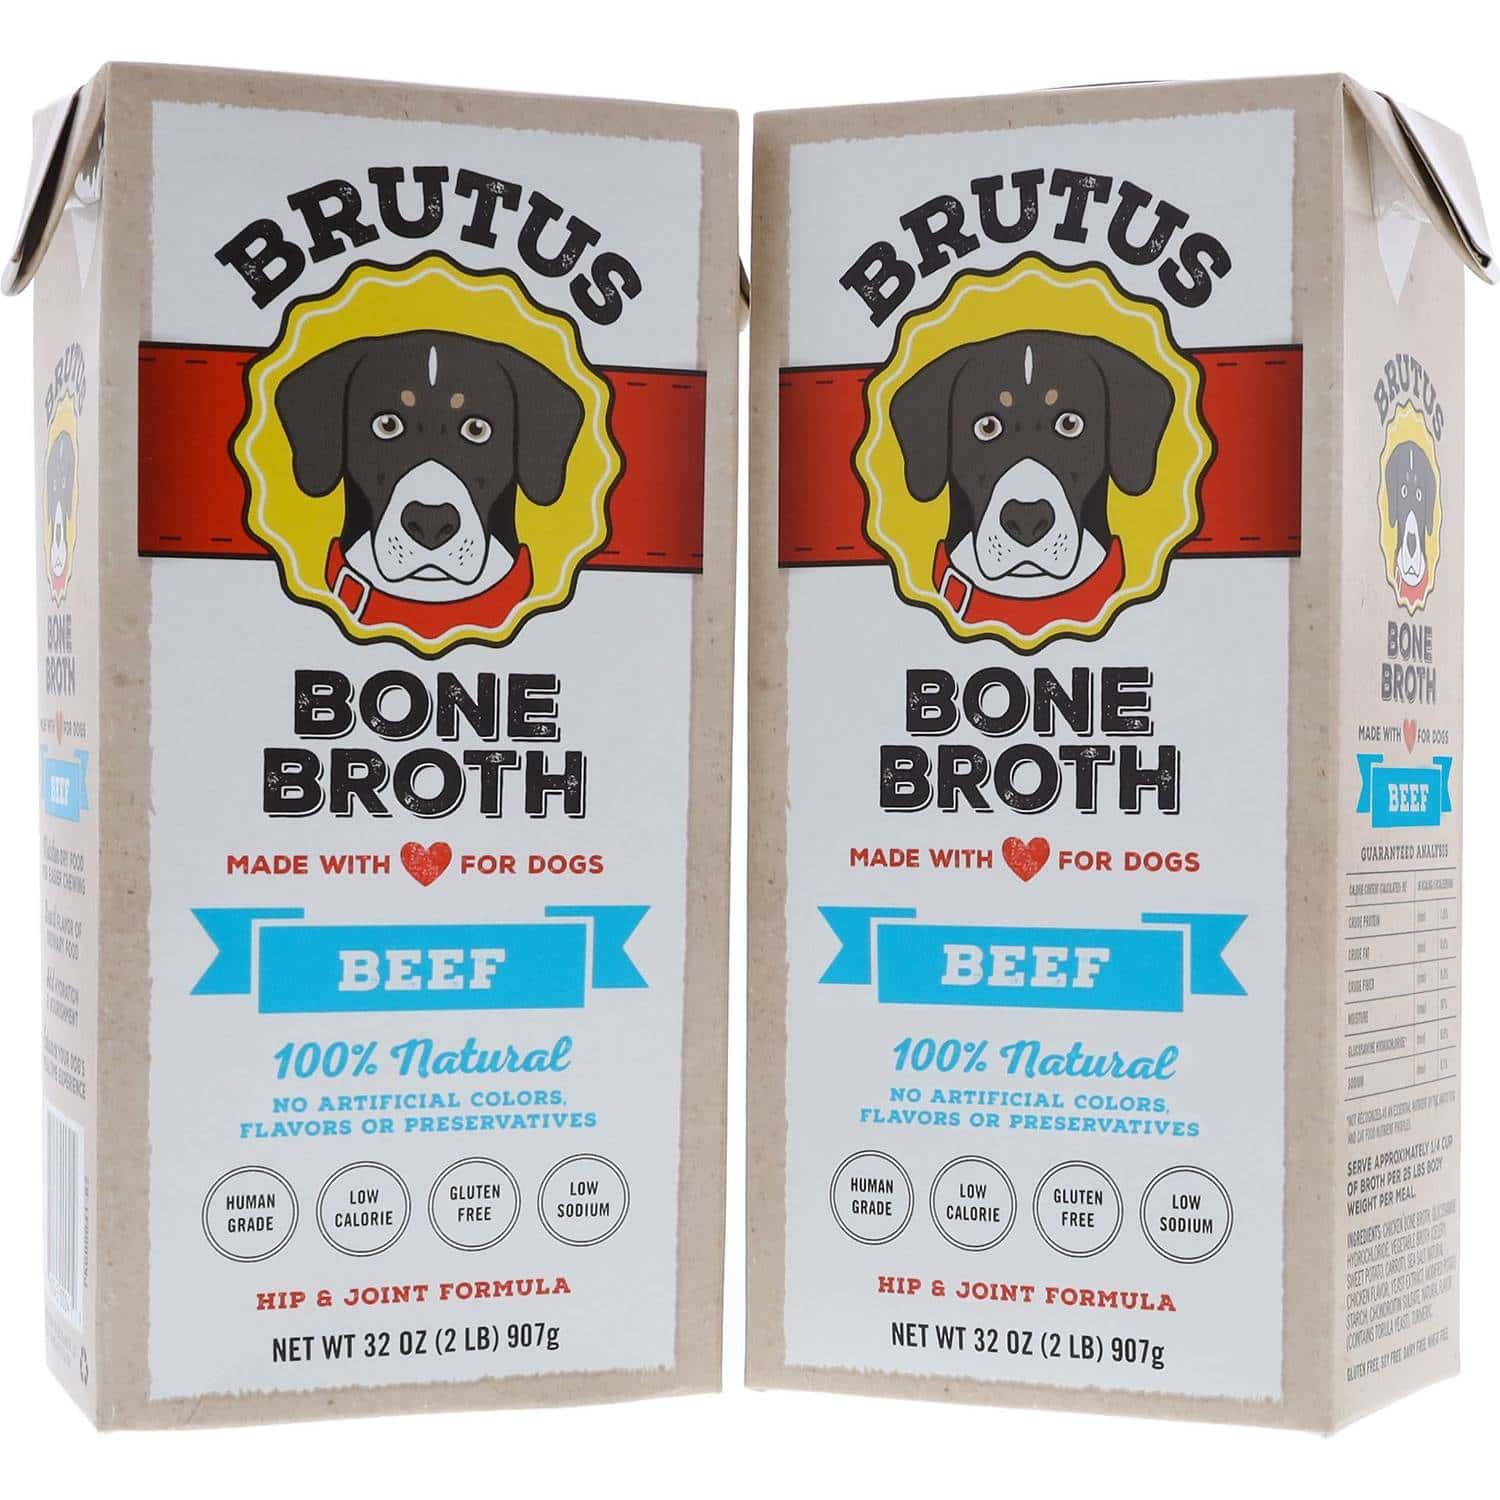 Brutus Bone Broth Beef Flavor (1)